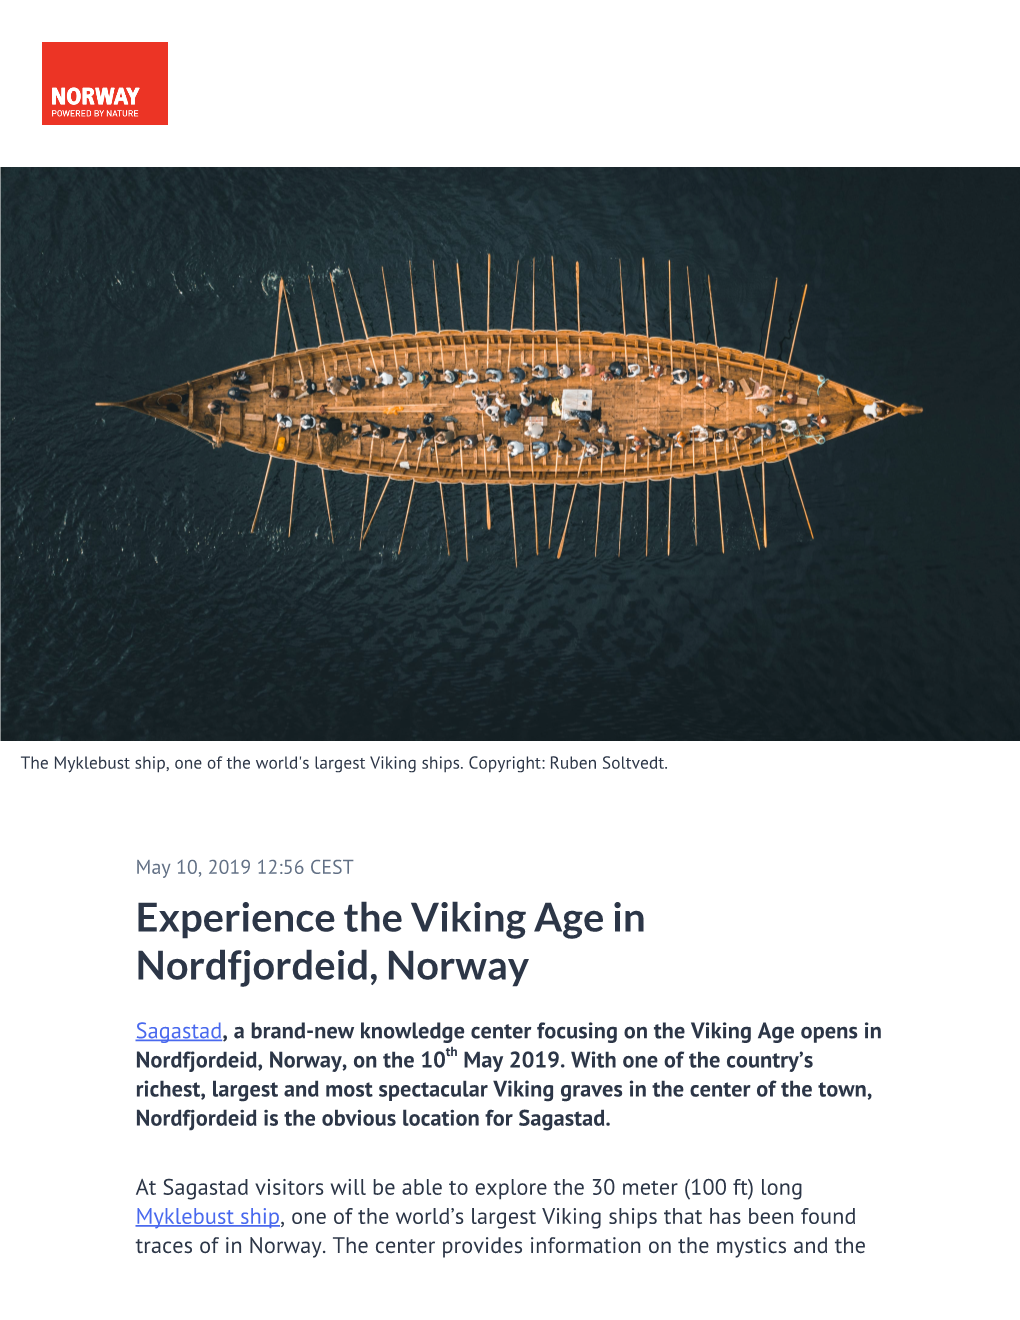 Experience the Viking Age in Nordfjordeid, Norway